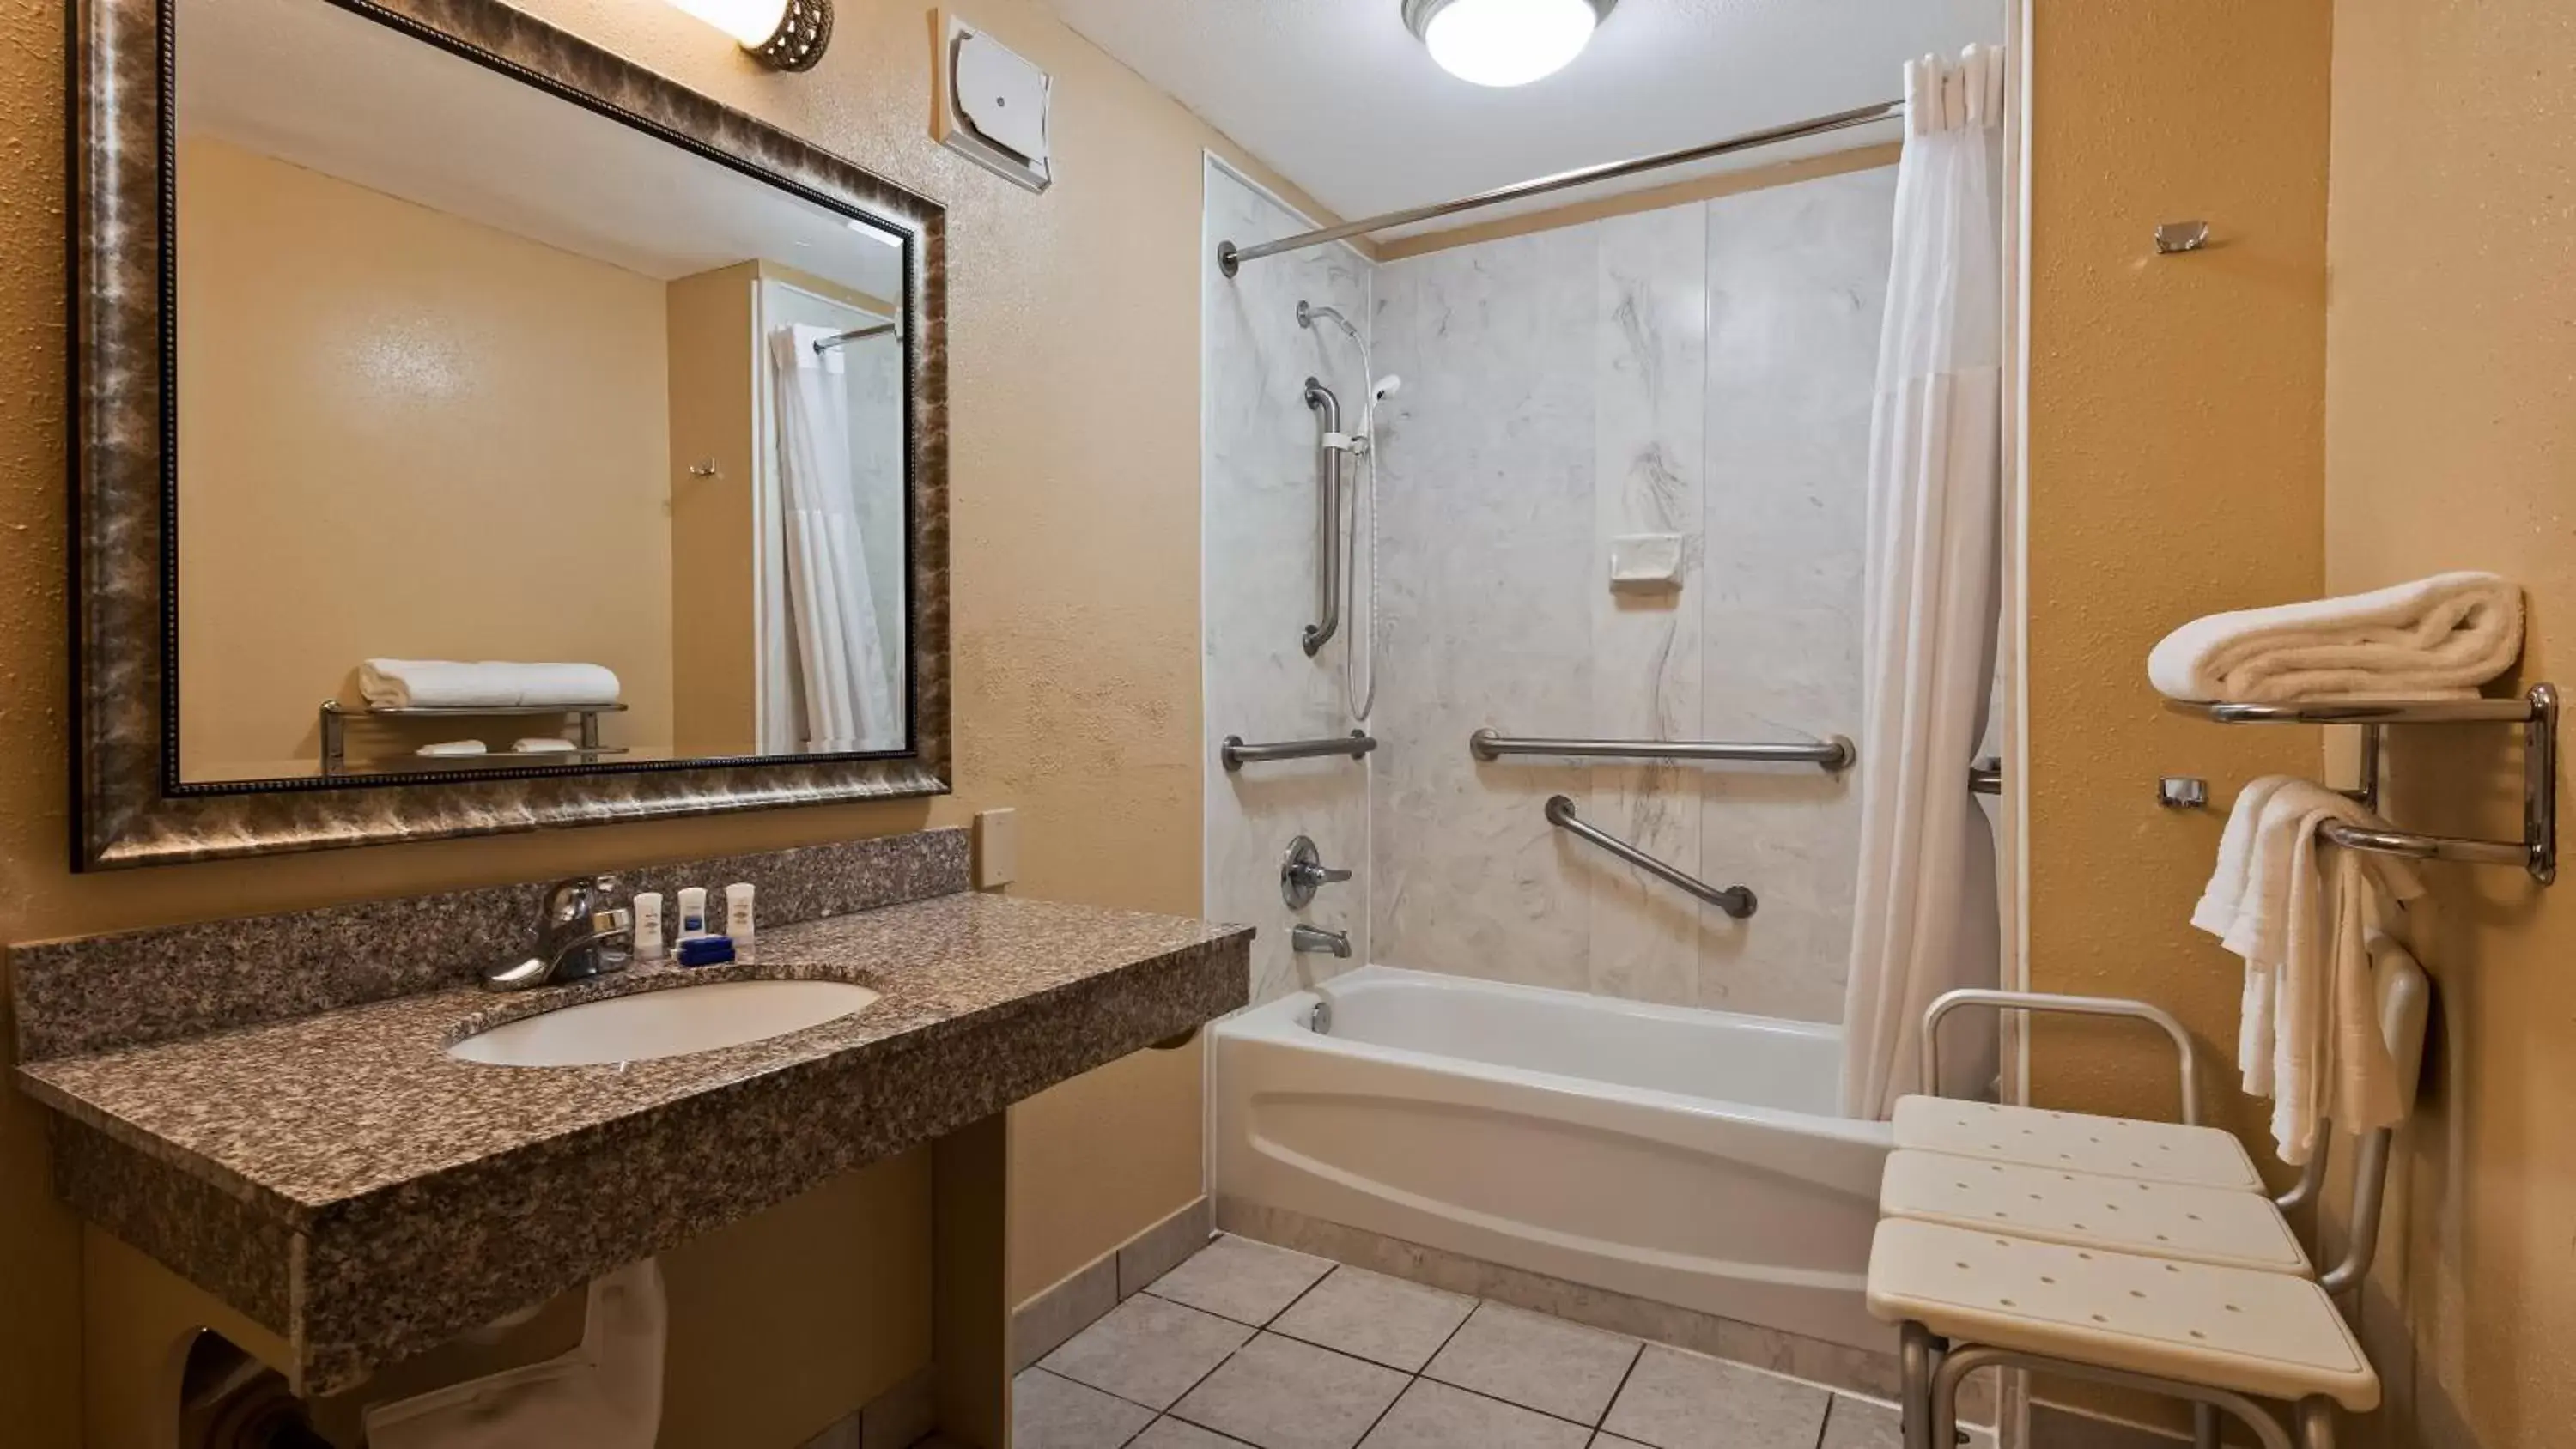 Bedroom, Bathroom in Best Western Covington